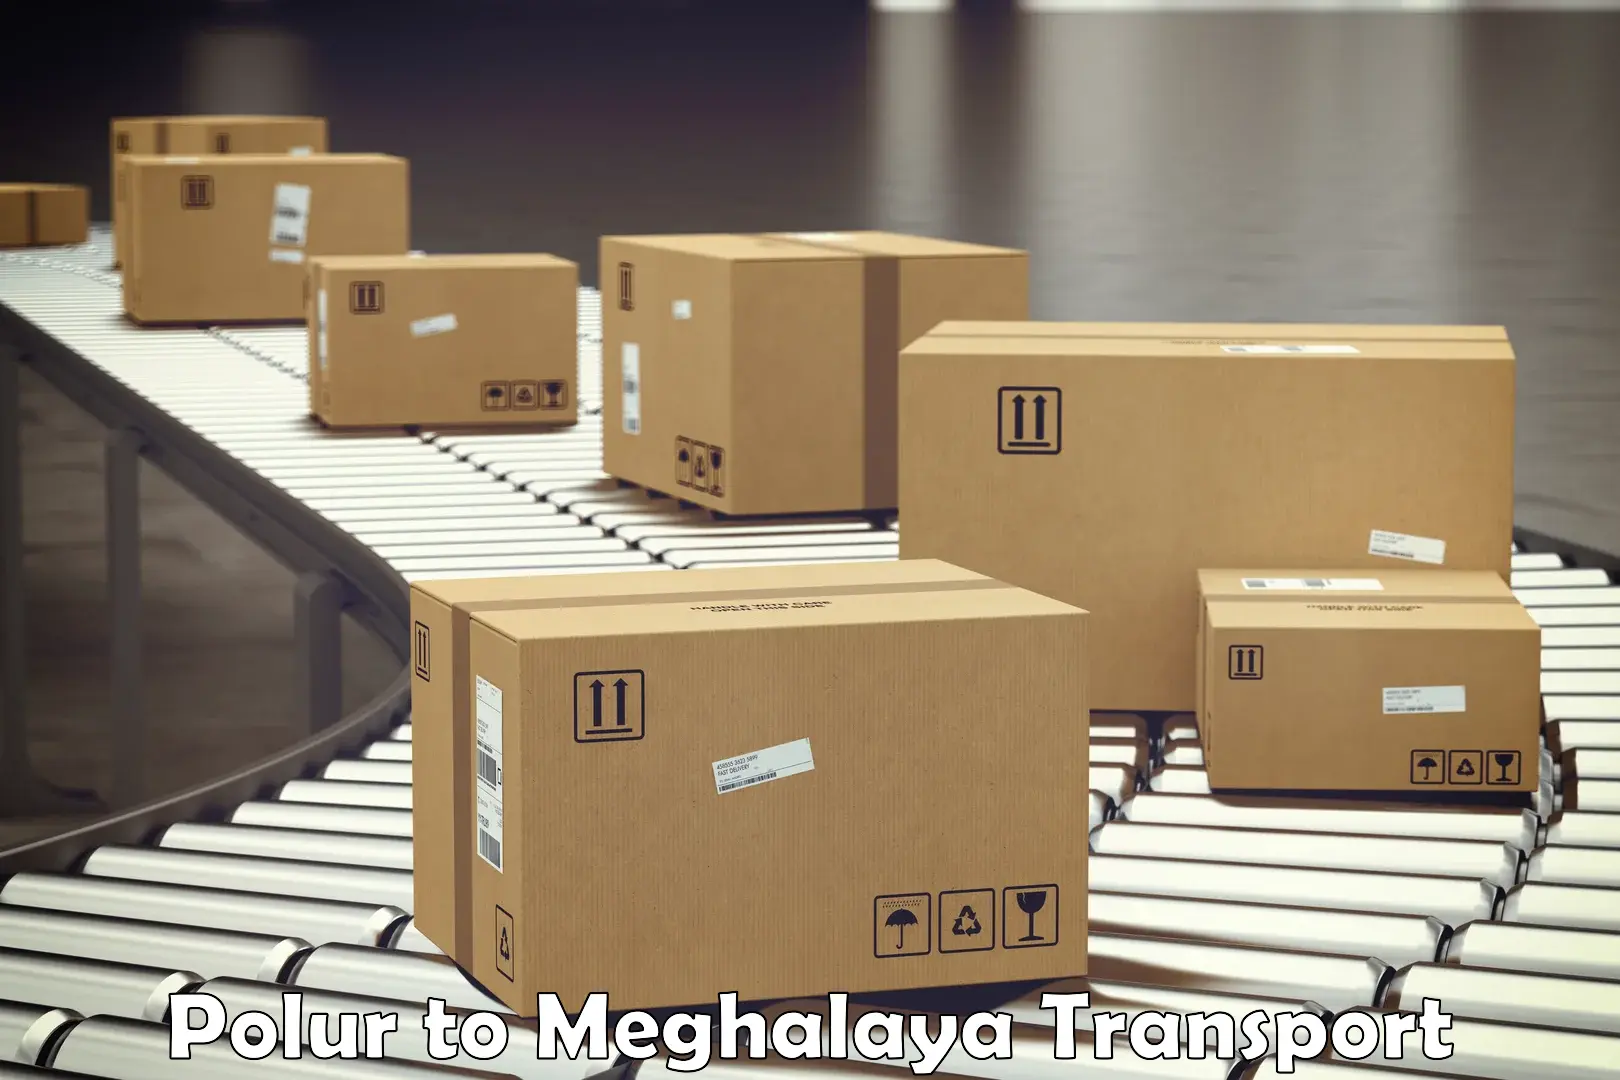 Two wheeler parcel service Polur to Meghalaya